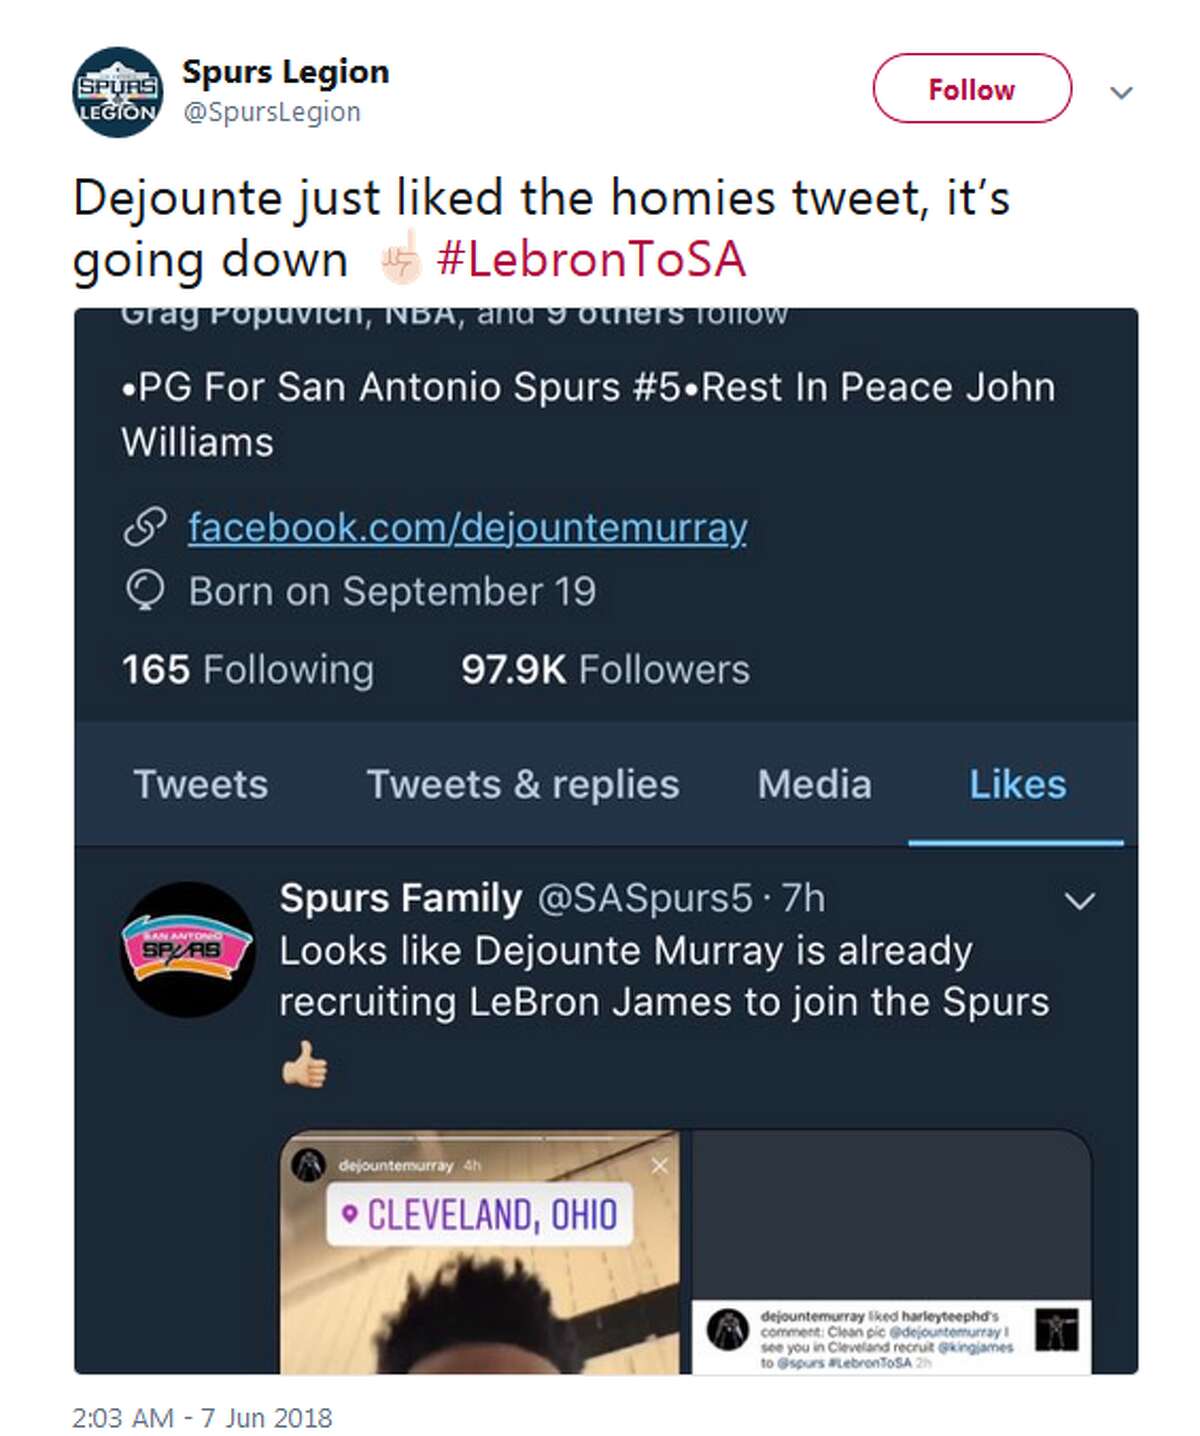 @SpursLegion: Dejounte just liked the homies tweet, it’s going down ☝